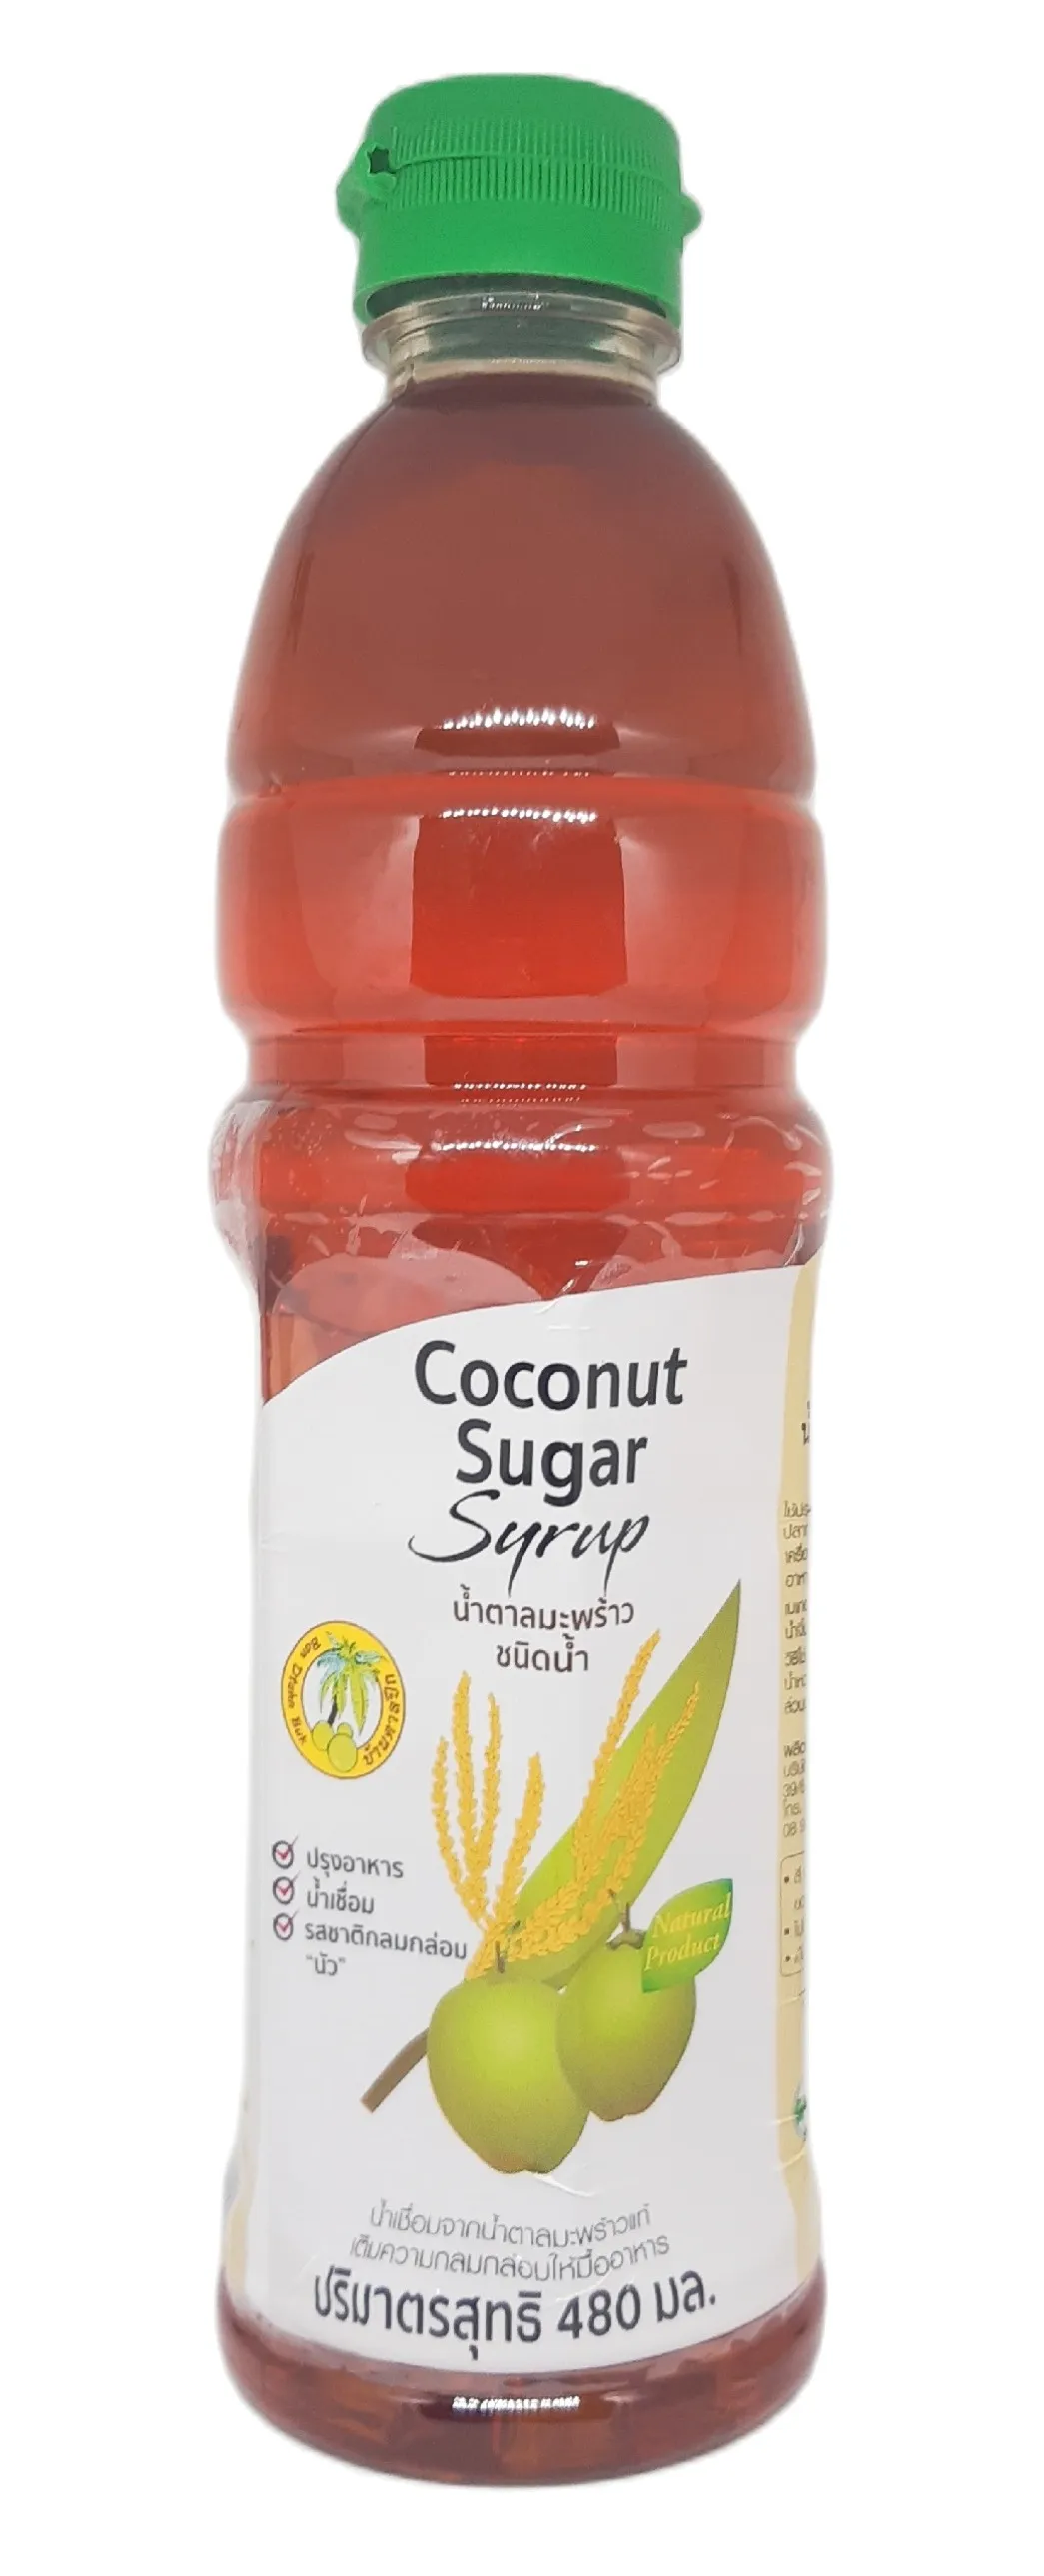 น้ำตาลมะพร้าวชนิดน้ำ เข้มข้น น้ำตาลมะพร้าว / Coconut Sugar Syrup ตรา บ้านตาลปึก หอมหวาน ใช้ง่าย สะดวก 480 มล.